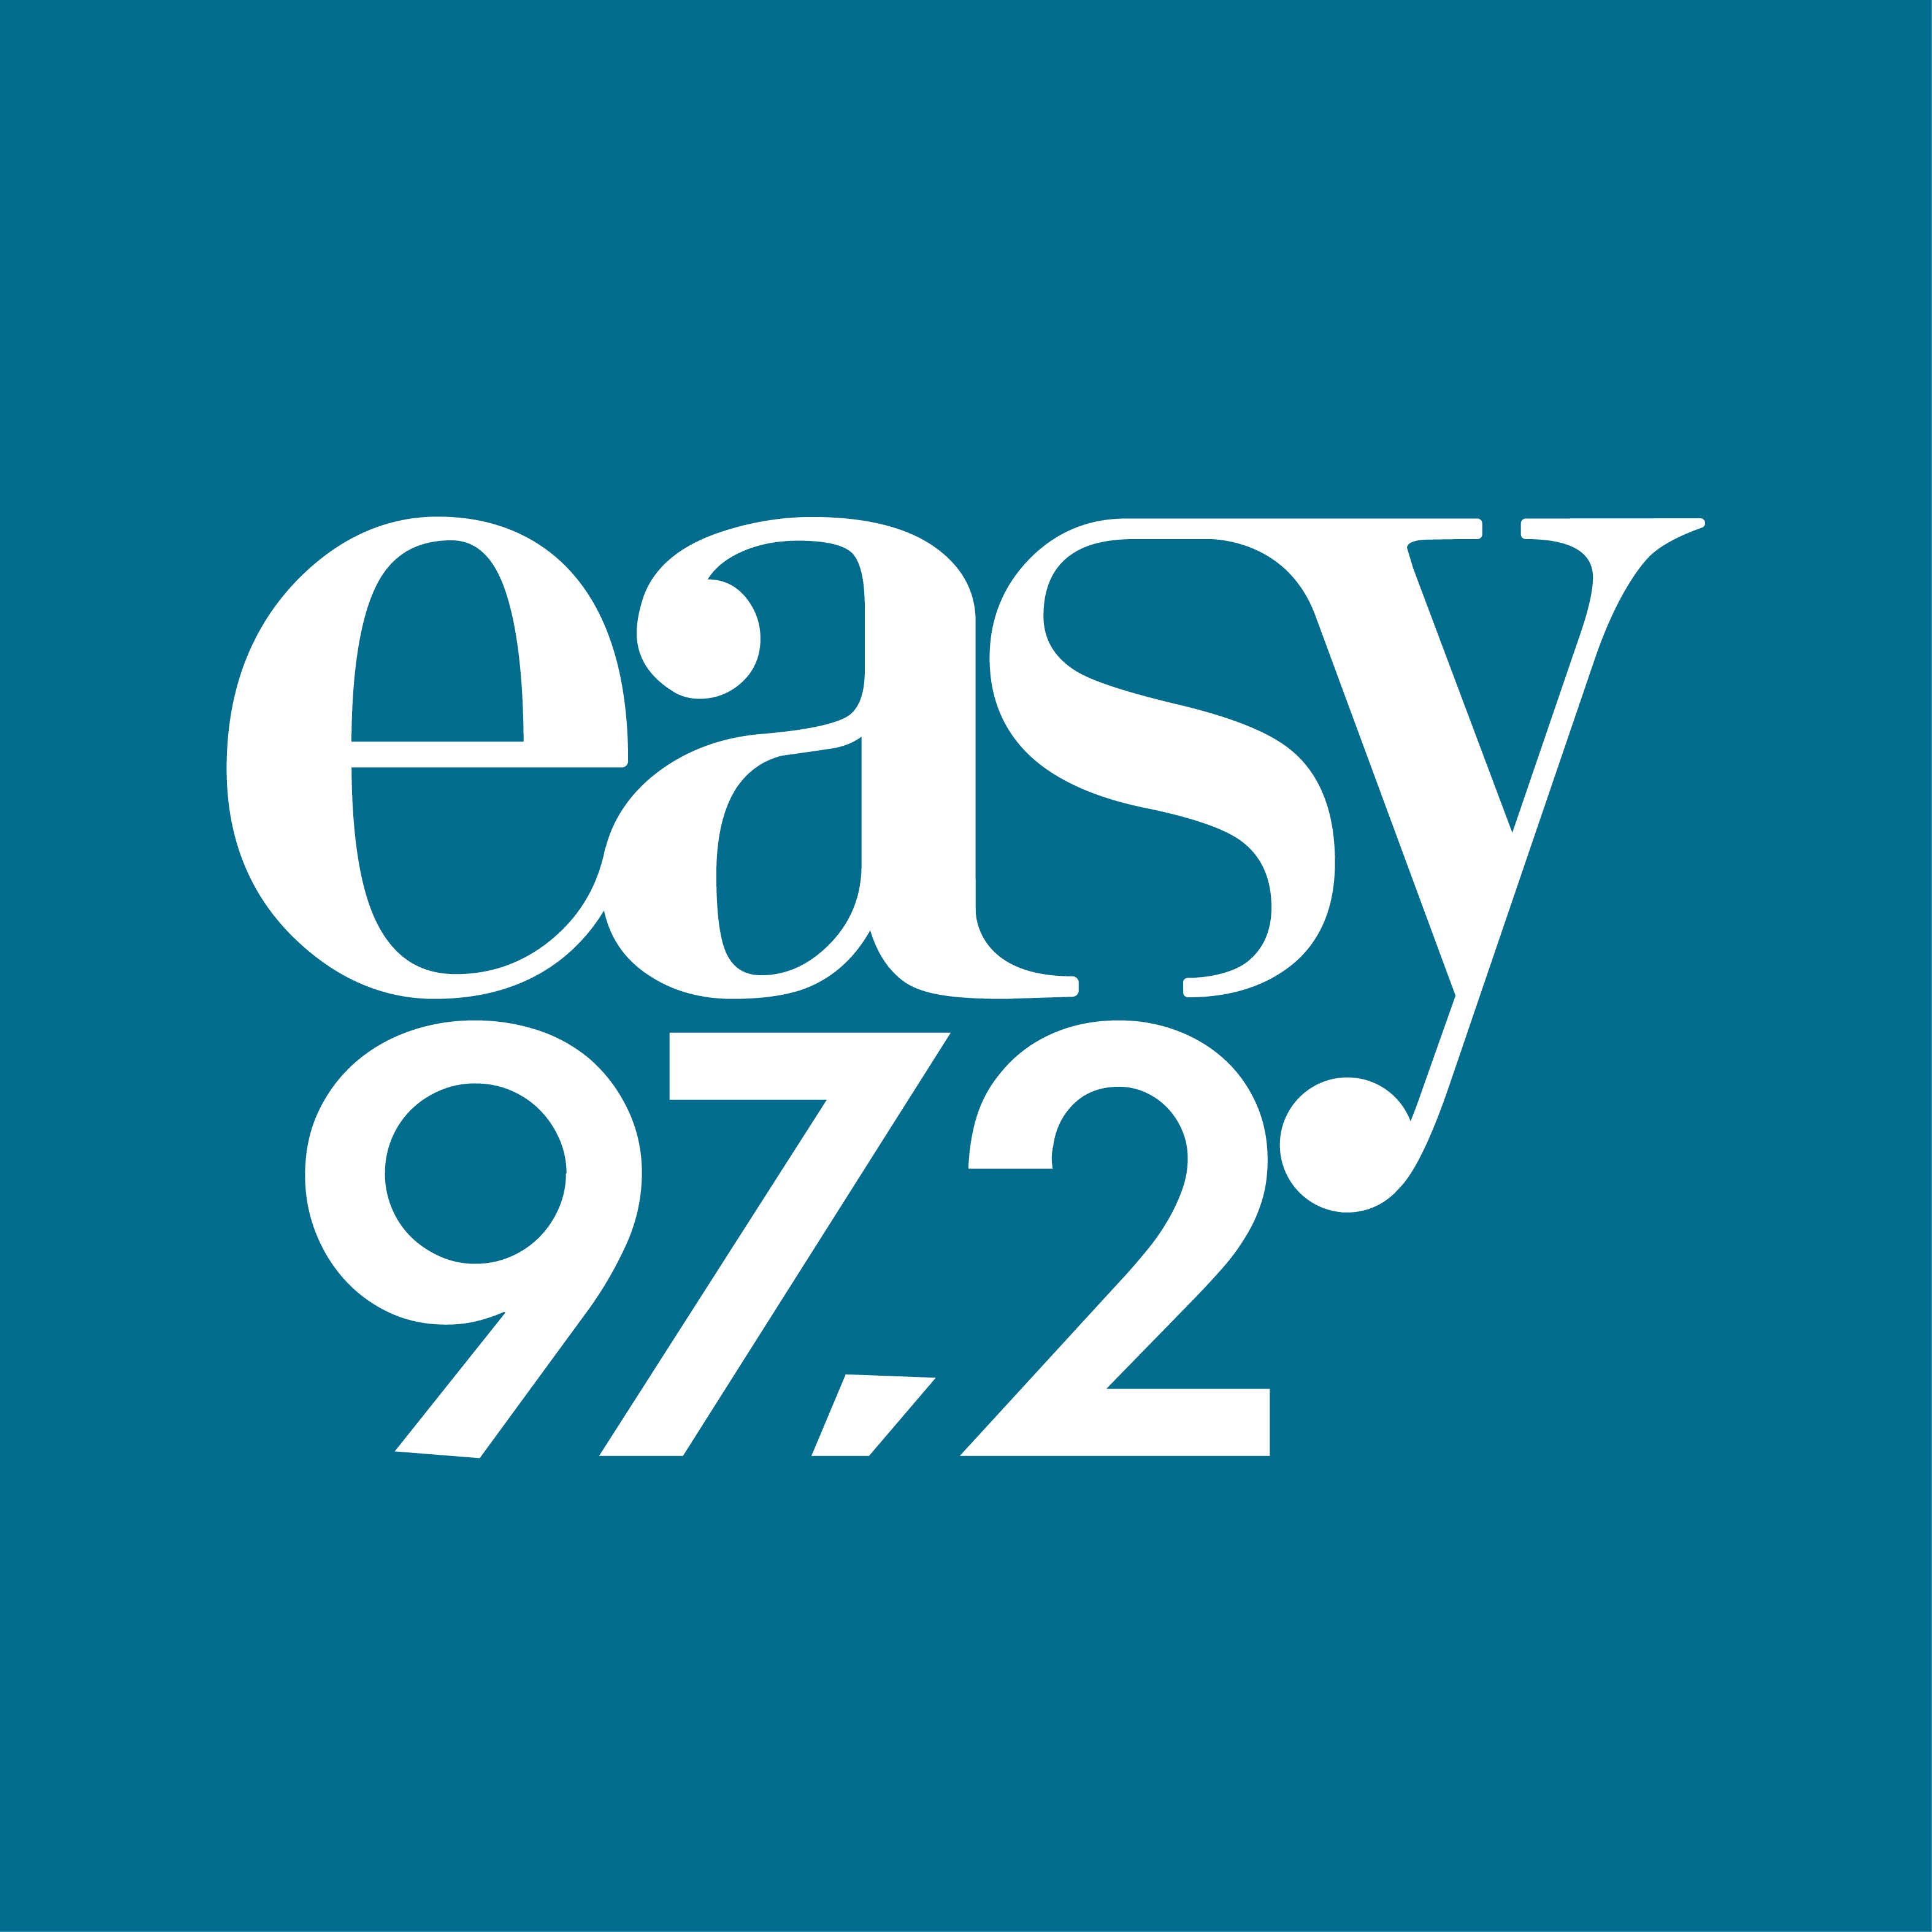 O Easy 97.2 είναι ο #1 ξένος μουσικός σταθμός στη Αθήνα σύμφωνα με την επίσημη έρευνα ακροαματικότητας!